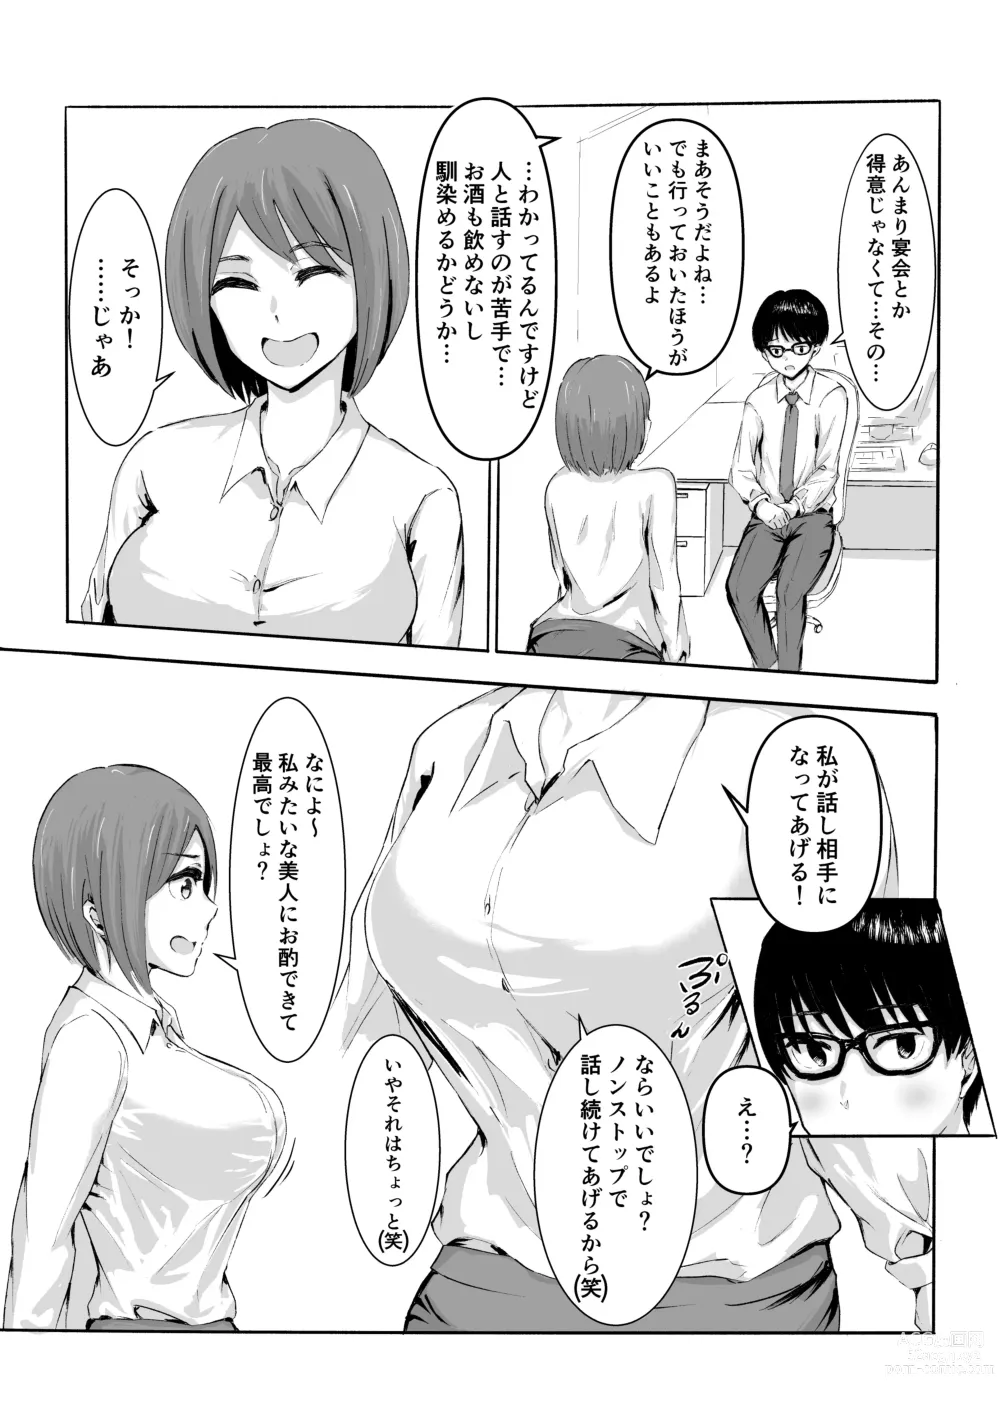 Page 8 of doujinshi Sakura no Hana Chiru Koro